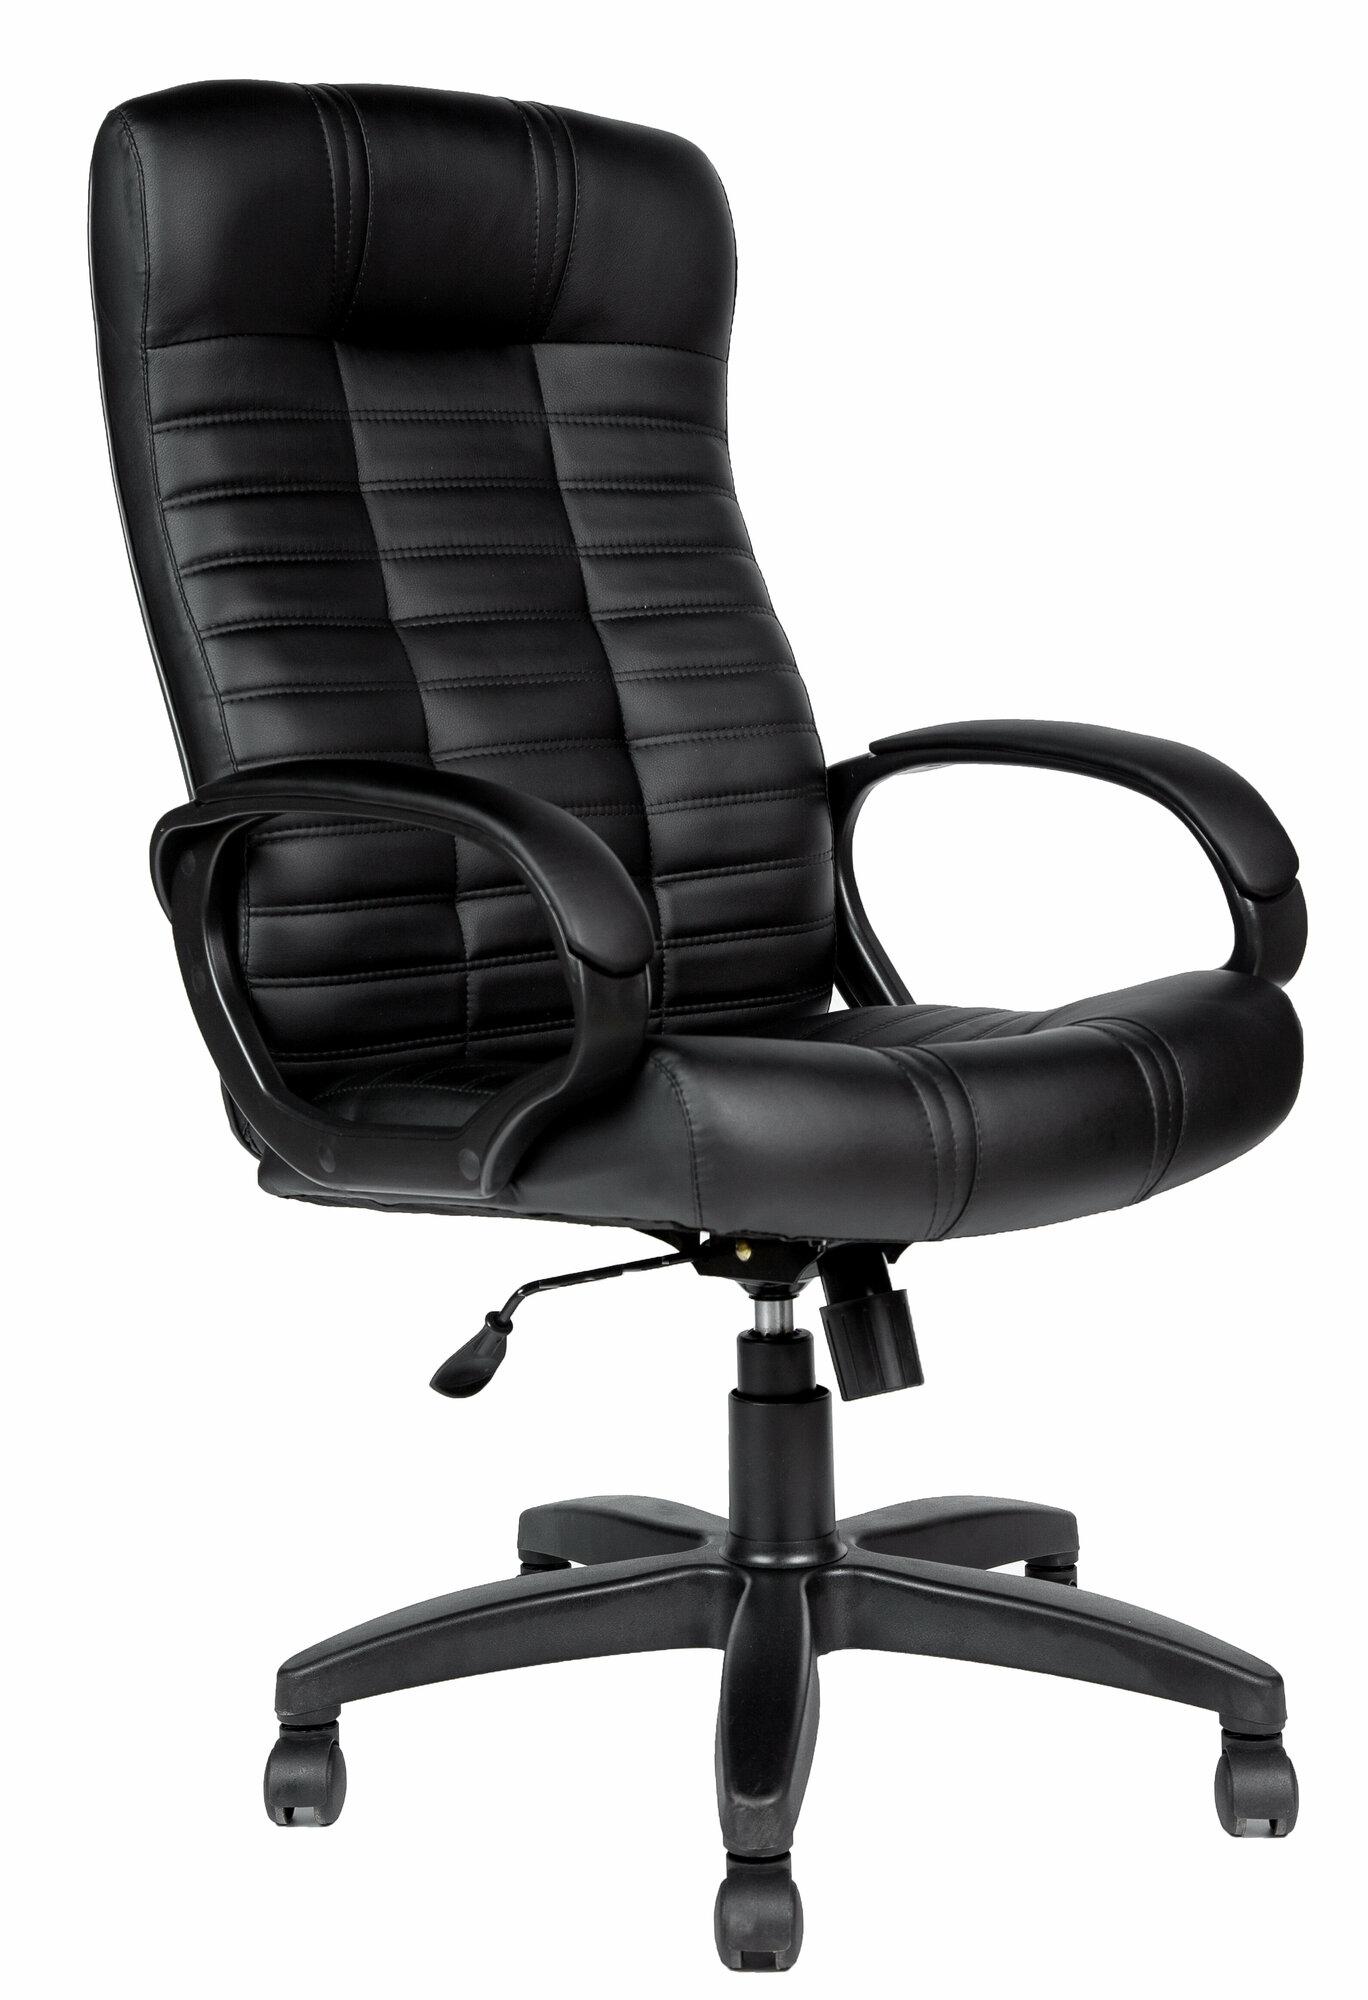 Компьютерное кресло Атлант Soft офисное, обивка: натуральная кожа, цвет: черный